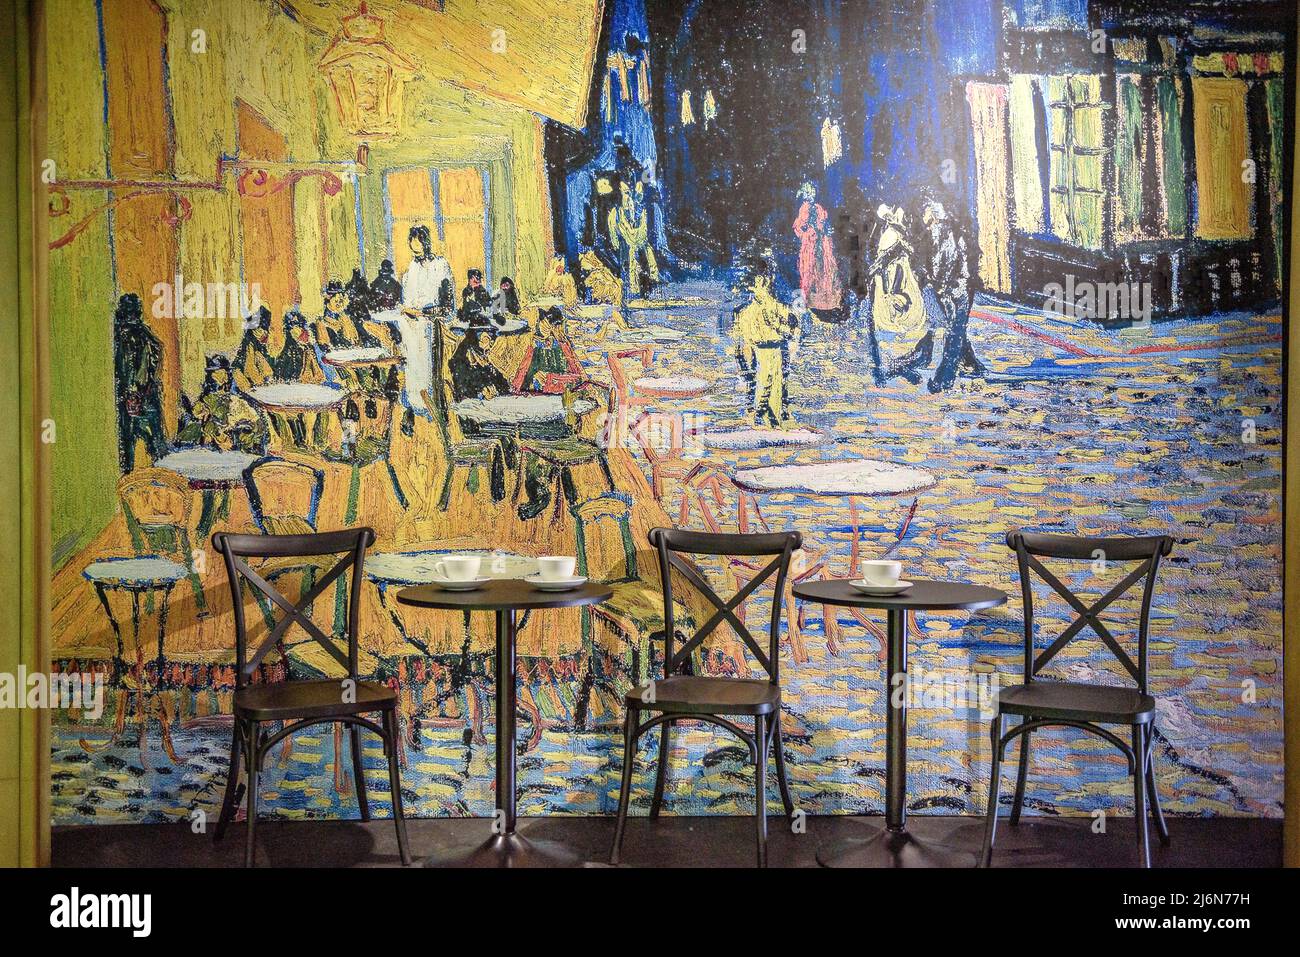 Mostra coinvolgente su Van Gogh nel centro commerciale Las Arenas (Barcellona, Catalogna, Spagna) ESP: Exposición inmersiva sobre Van Gogh en Barcelona Foto Stock